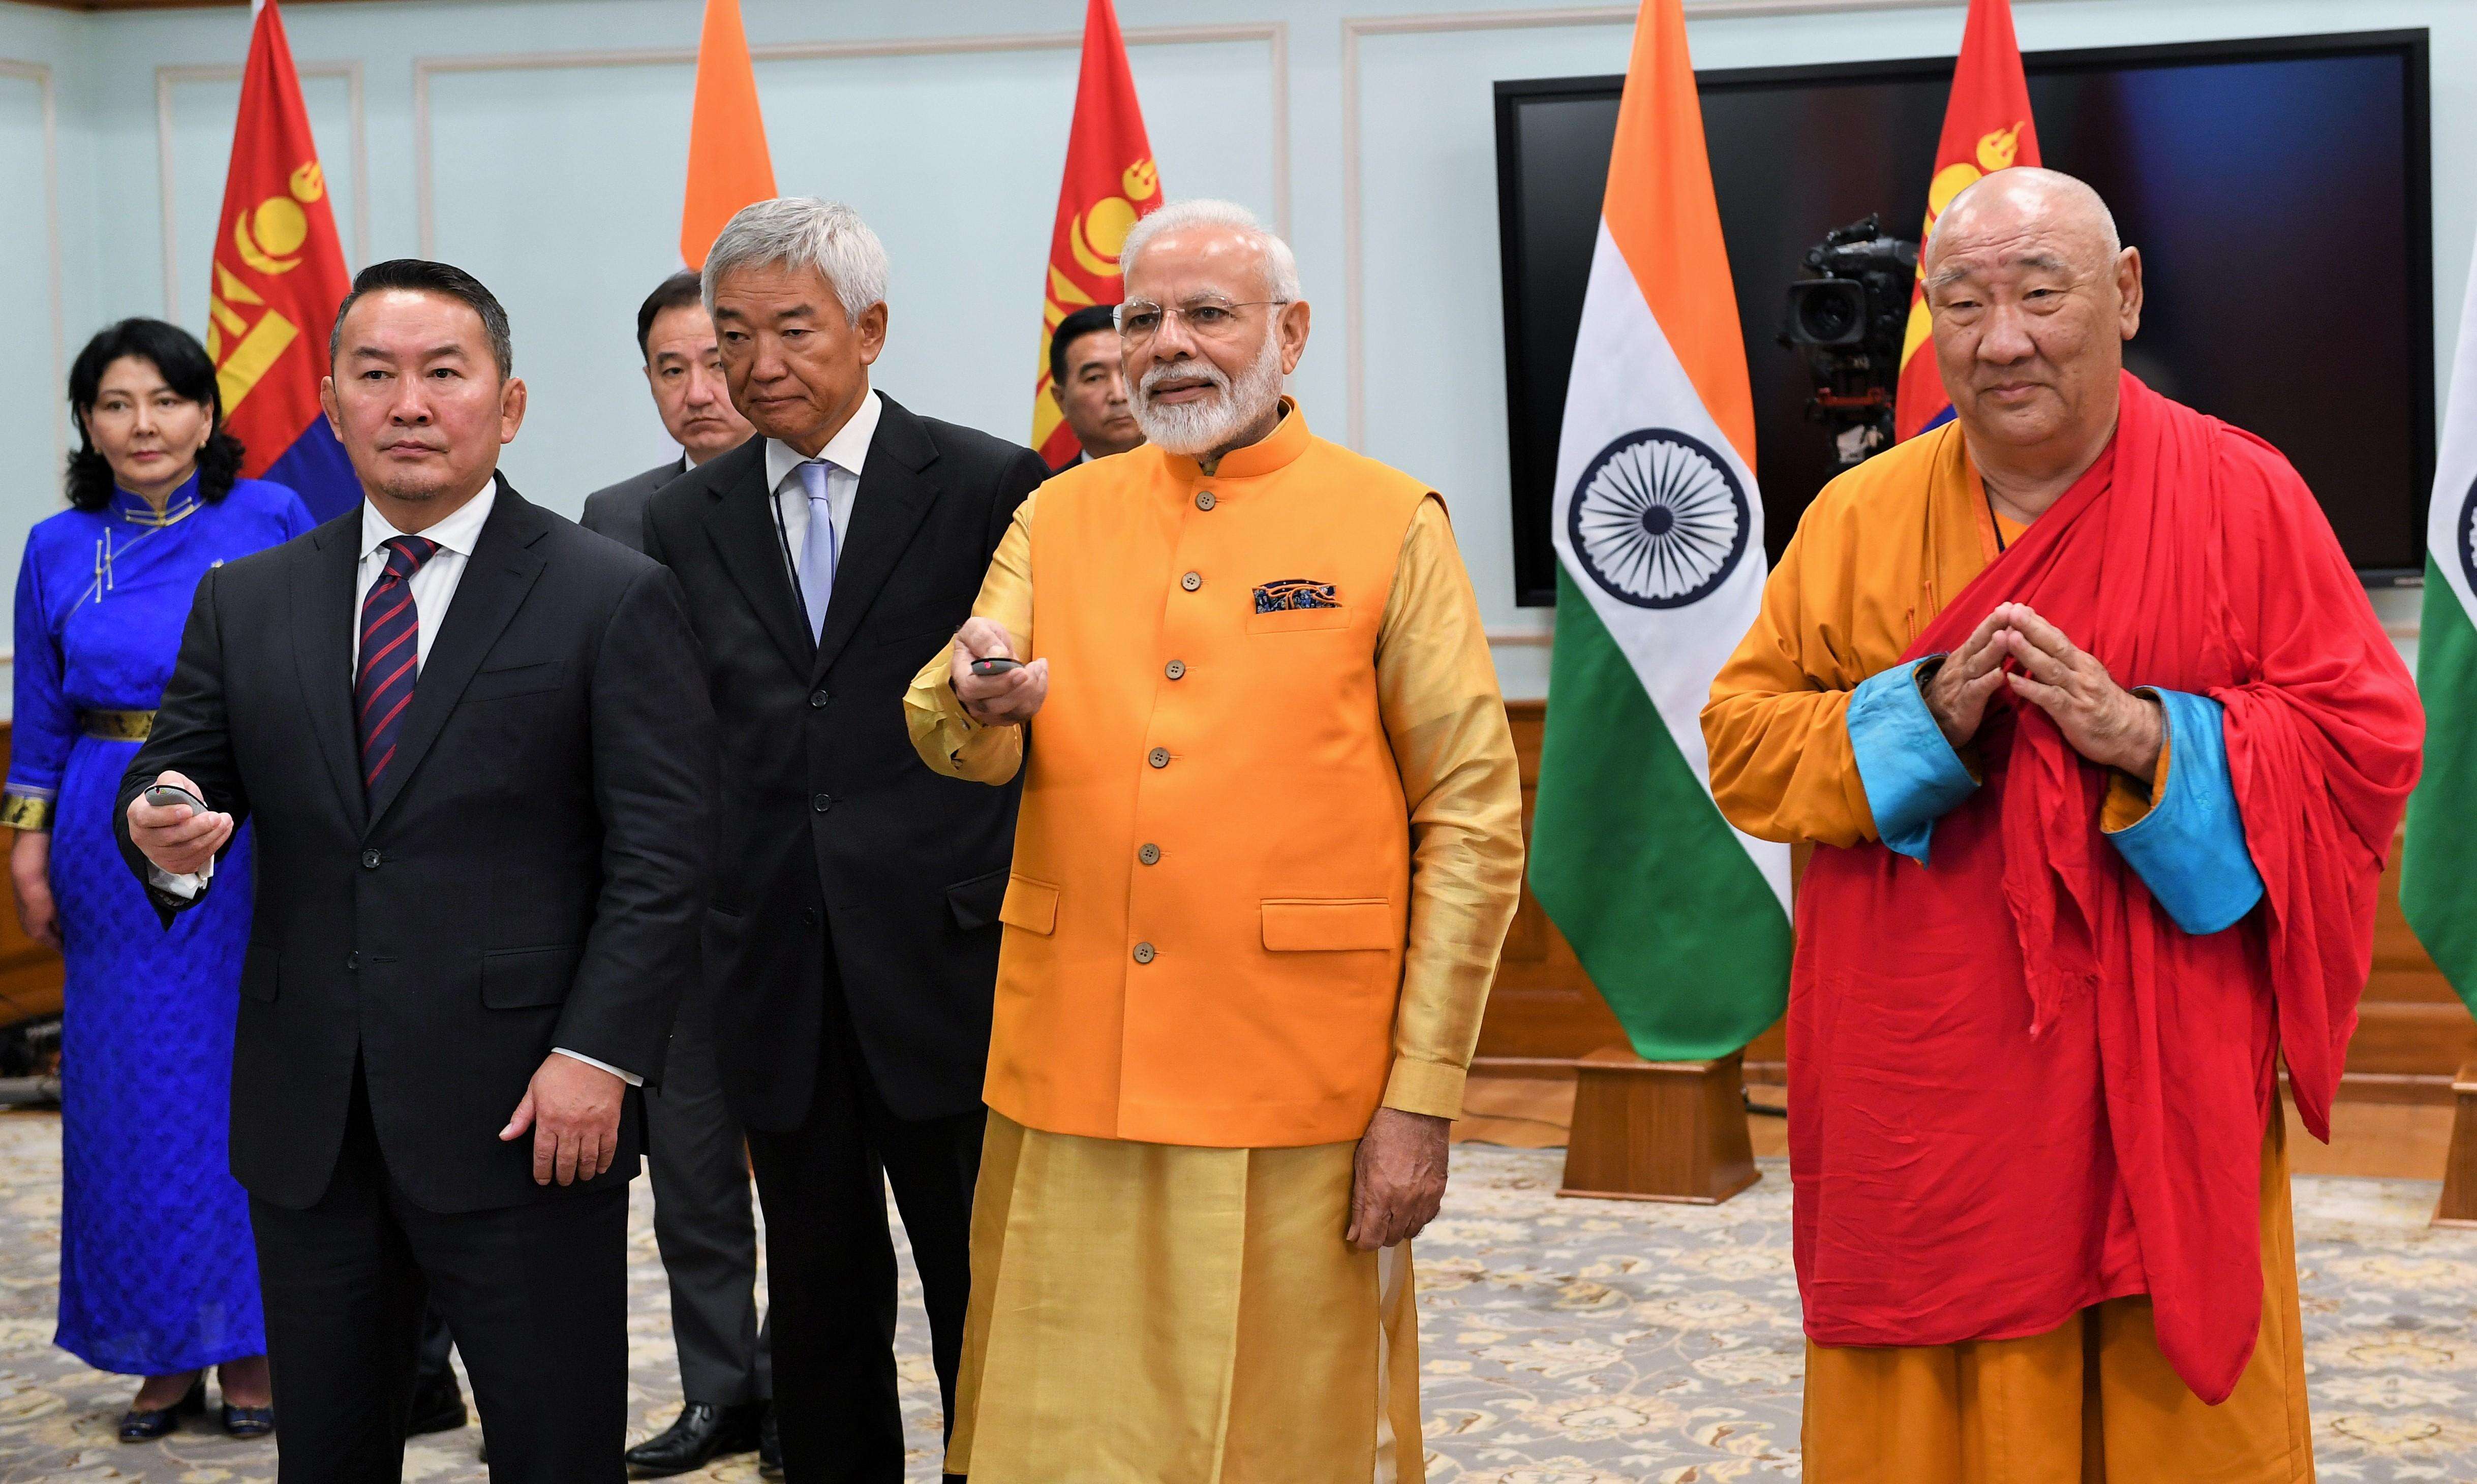 प्रधानमंत्री  नरेन्द्र मोदी और मंगोलिया के राष्ट्रपति  खाल्तमागिन बटुल्गा ने संयुक्त रूप से भगवान बुद्ध की प्रतिमा का अनावरण किया